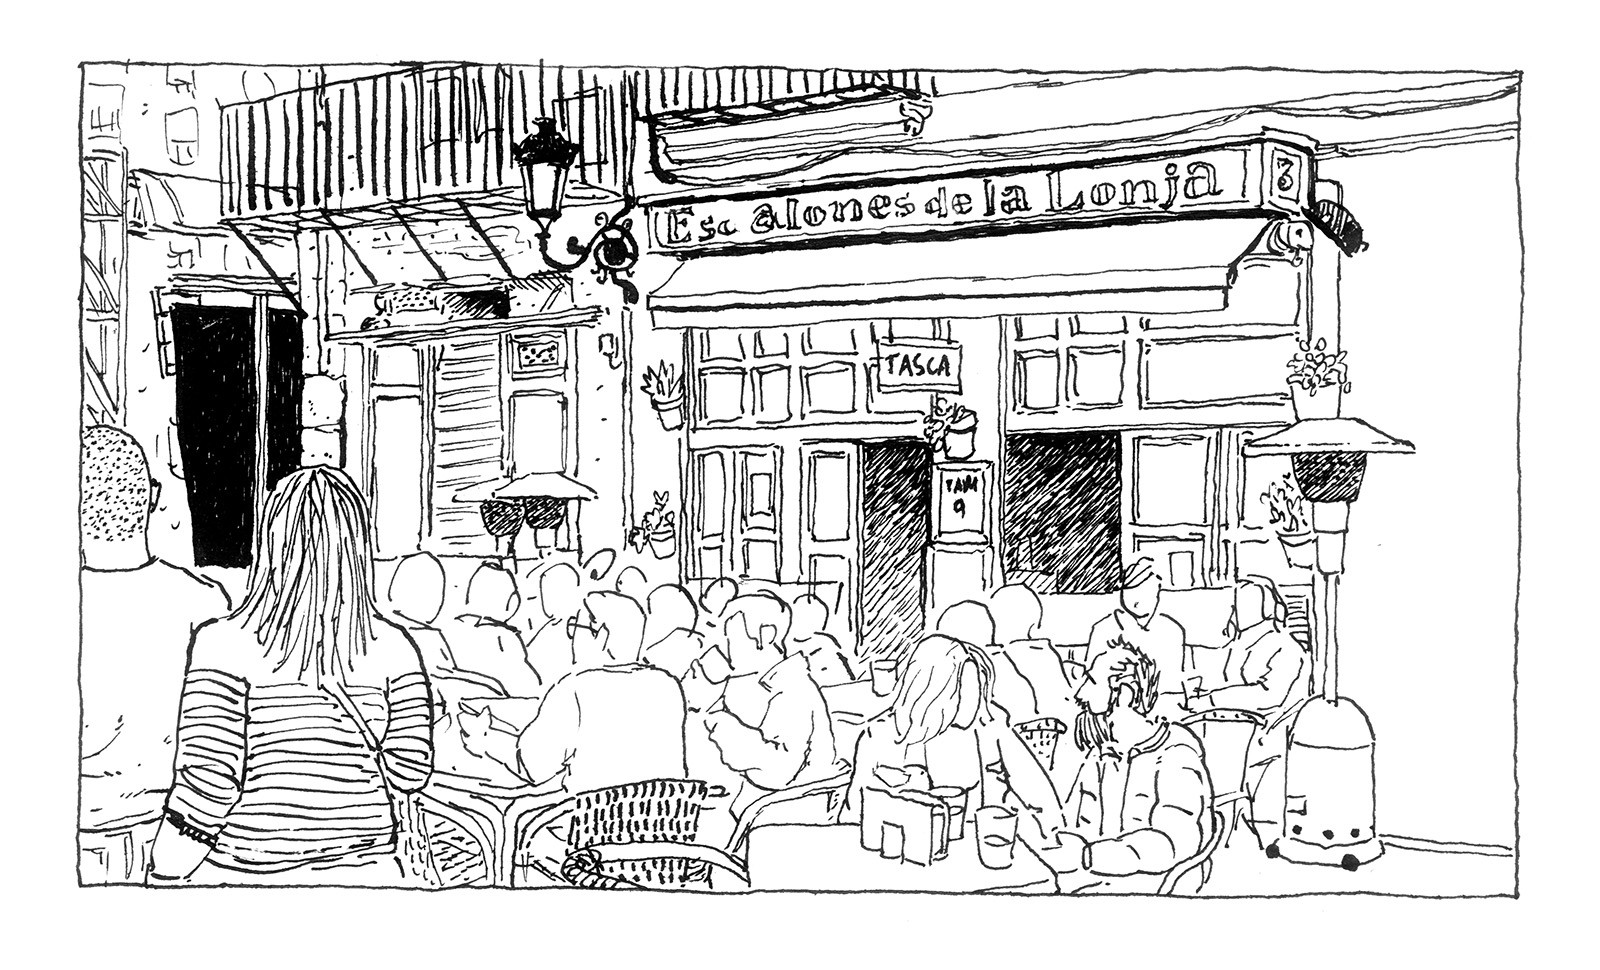 Dibujo en blanco y negro del bar Los Escalones de la lonja en Valencia